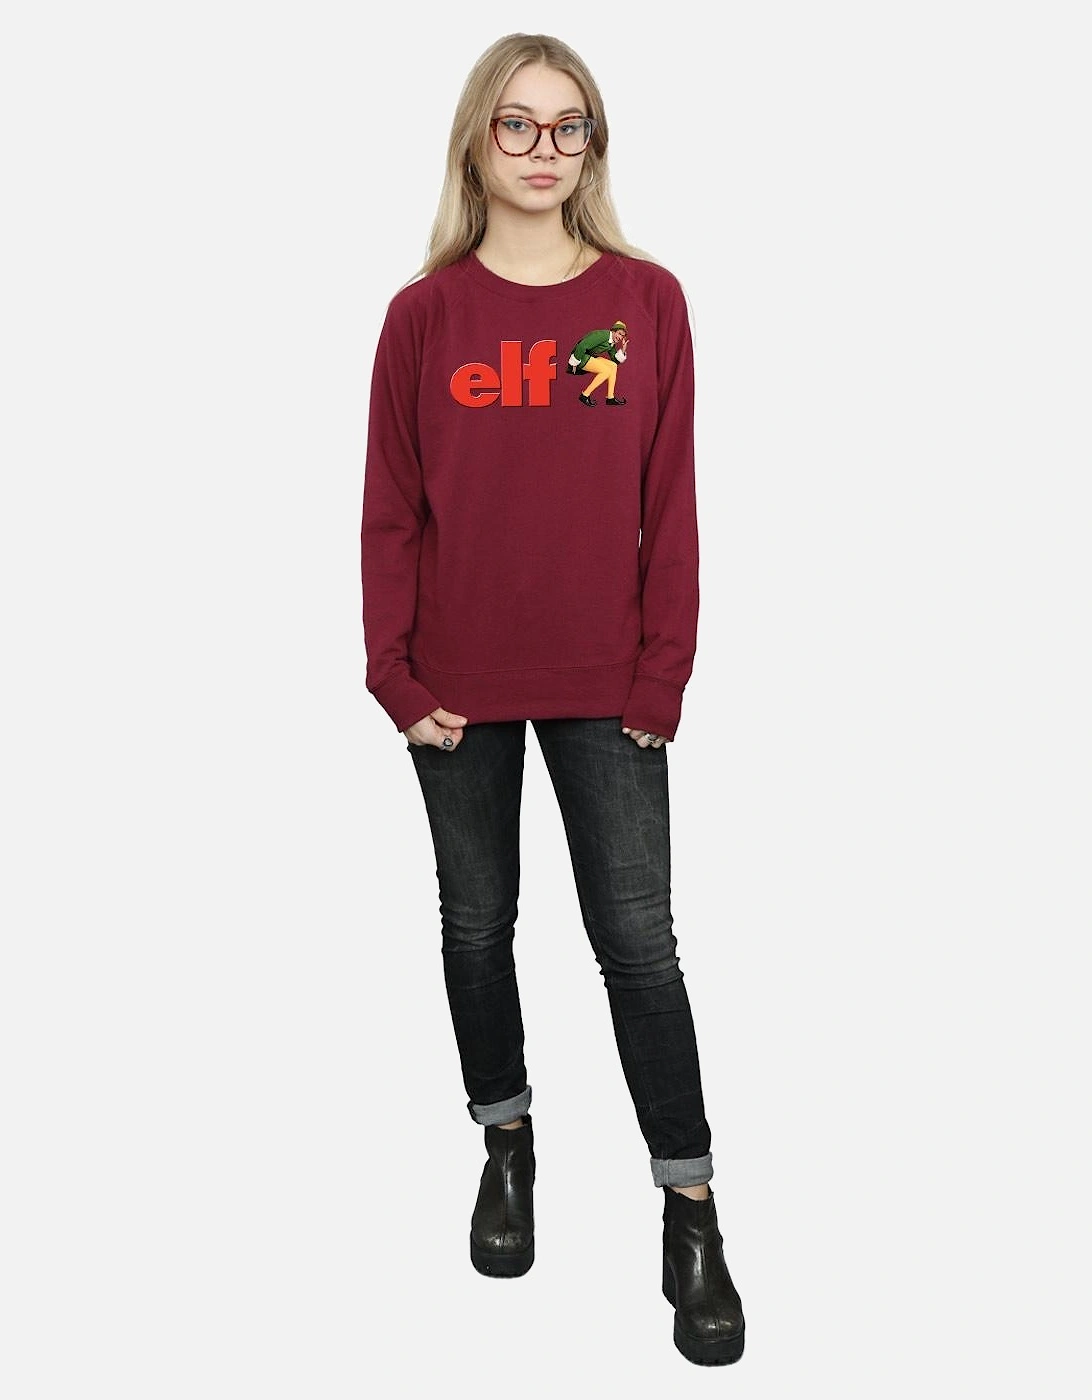 Womens/Ladies Crouching Logo Sweatshirt